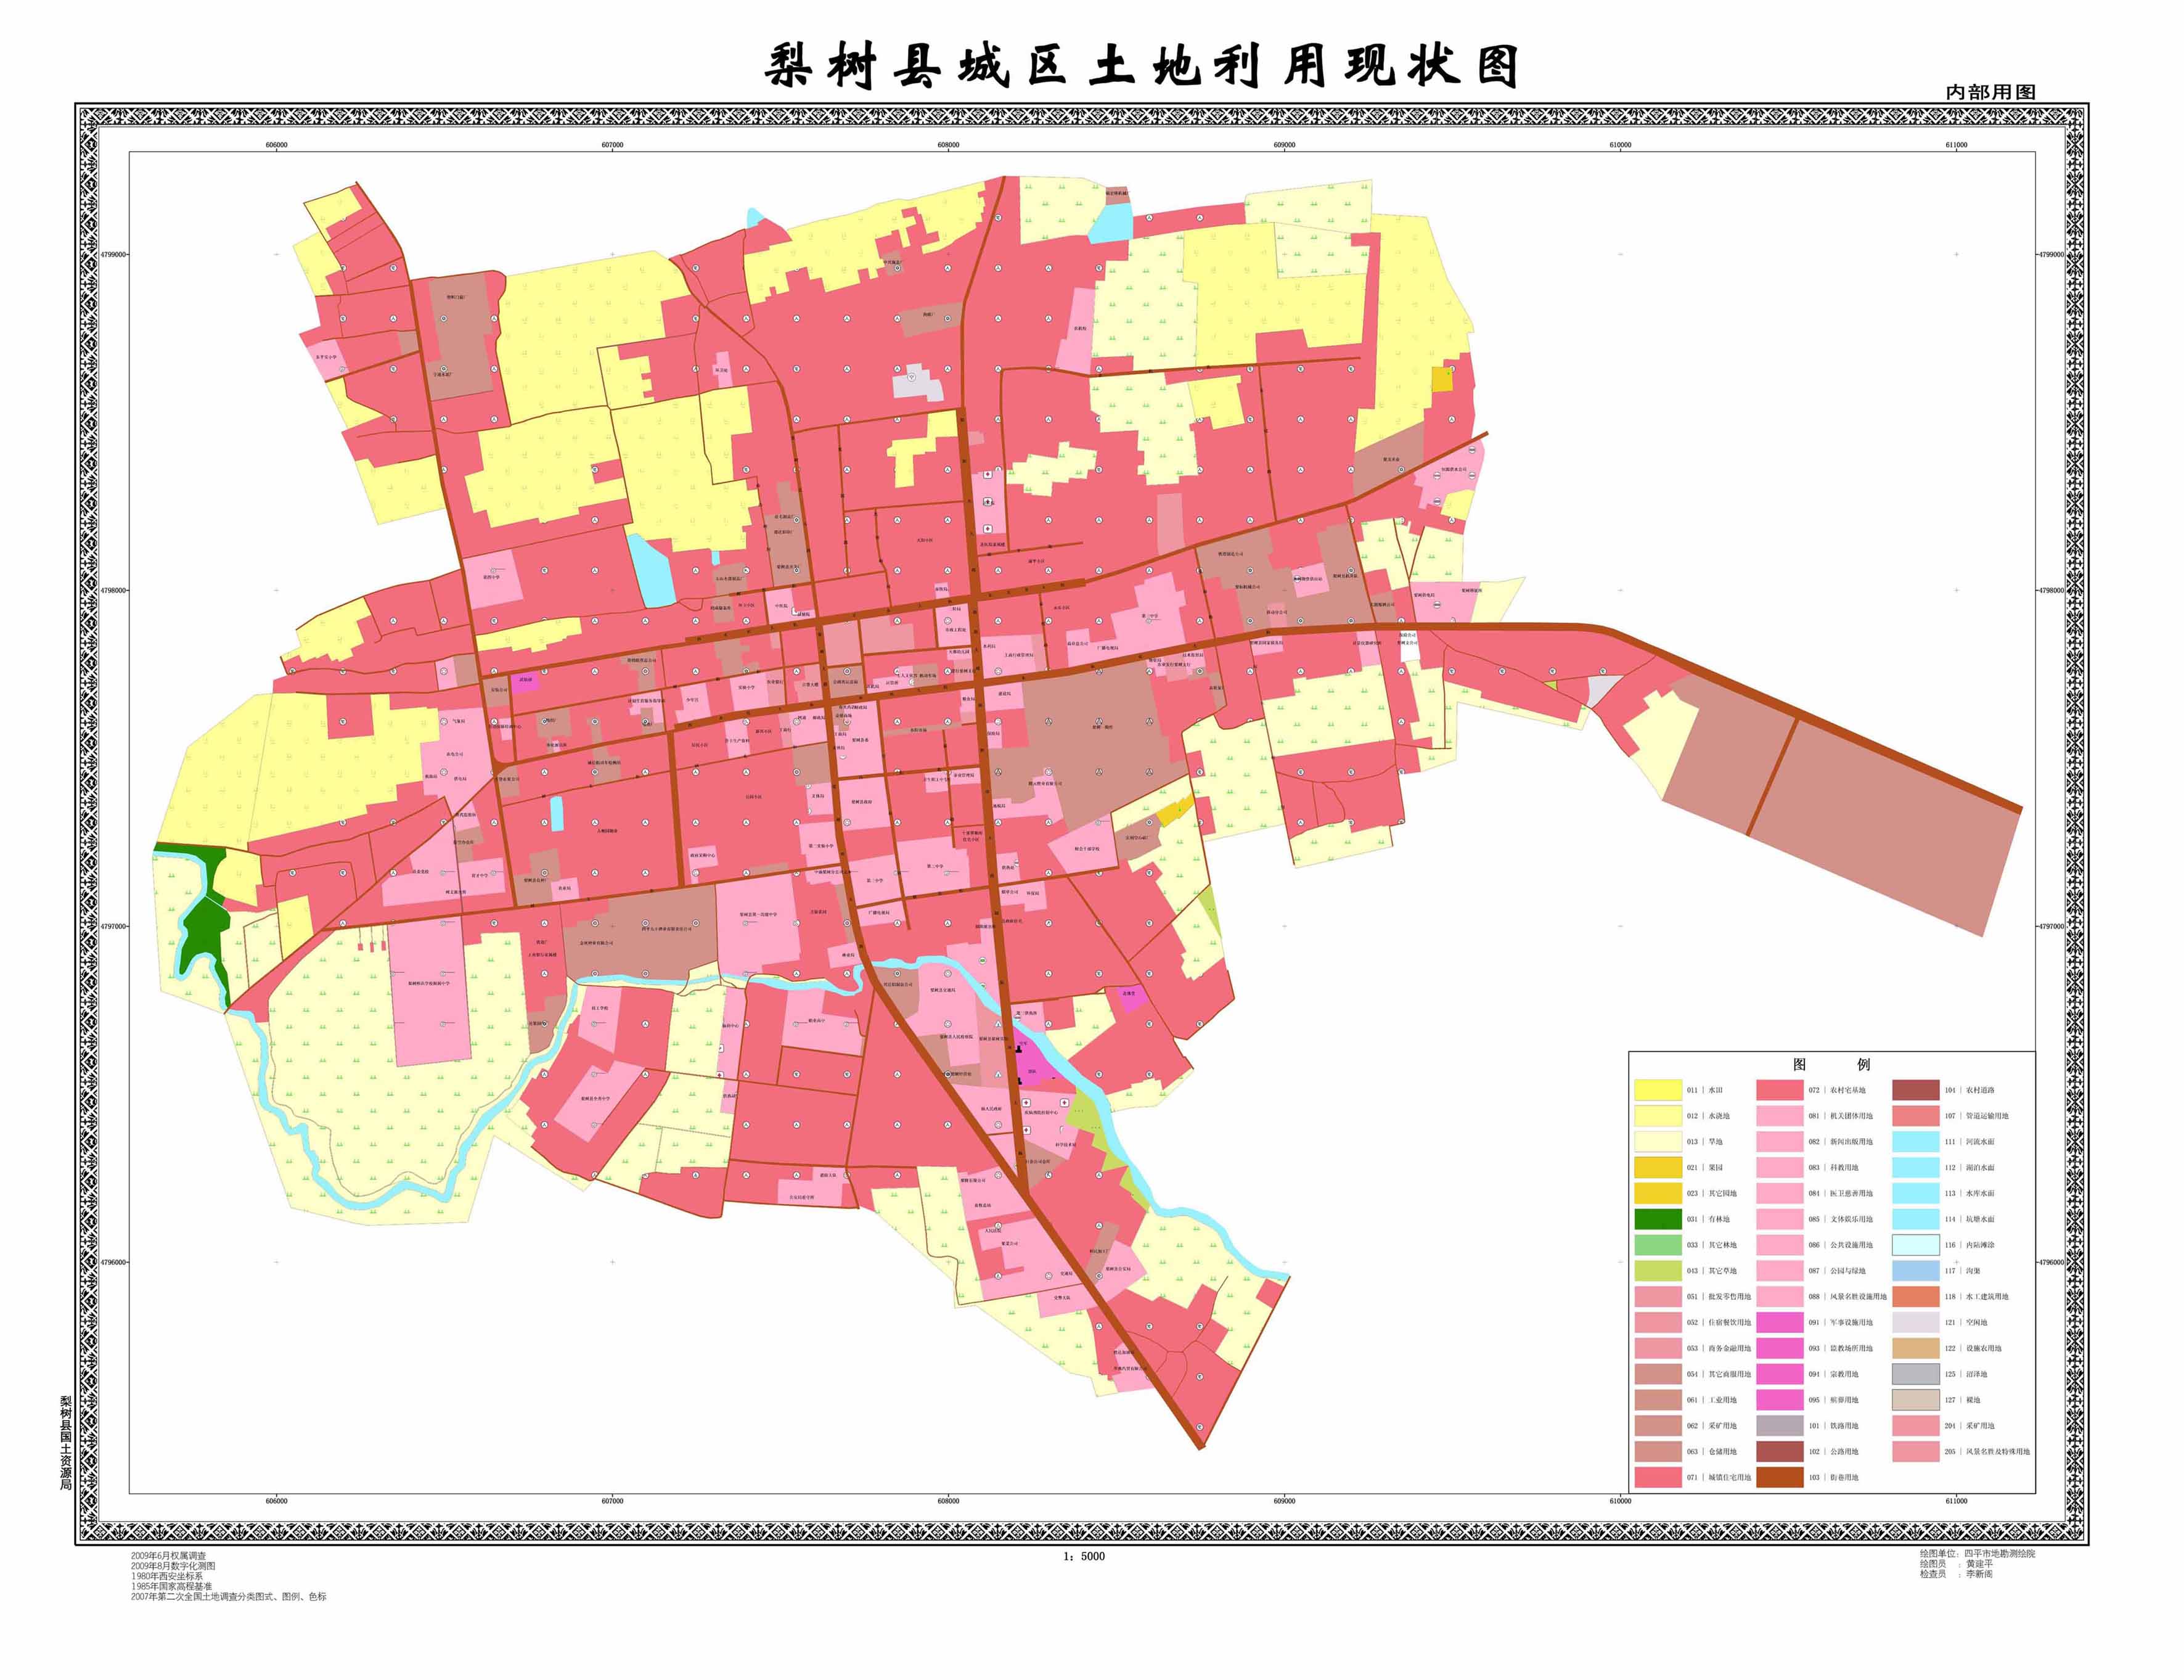 梨树县土地利用现状图 - 四平市地勘测绘院 - 科技图片